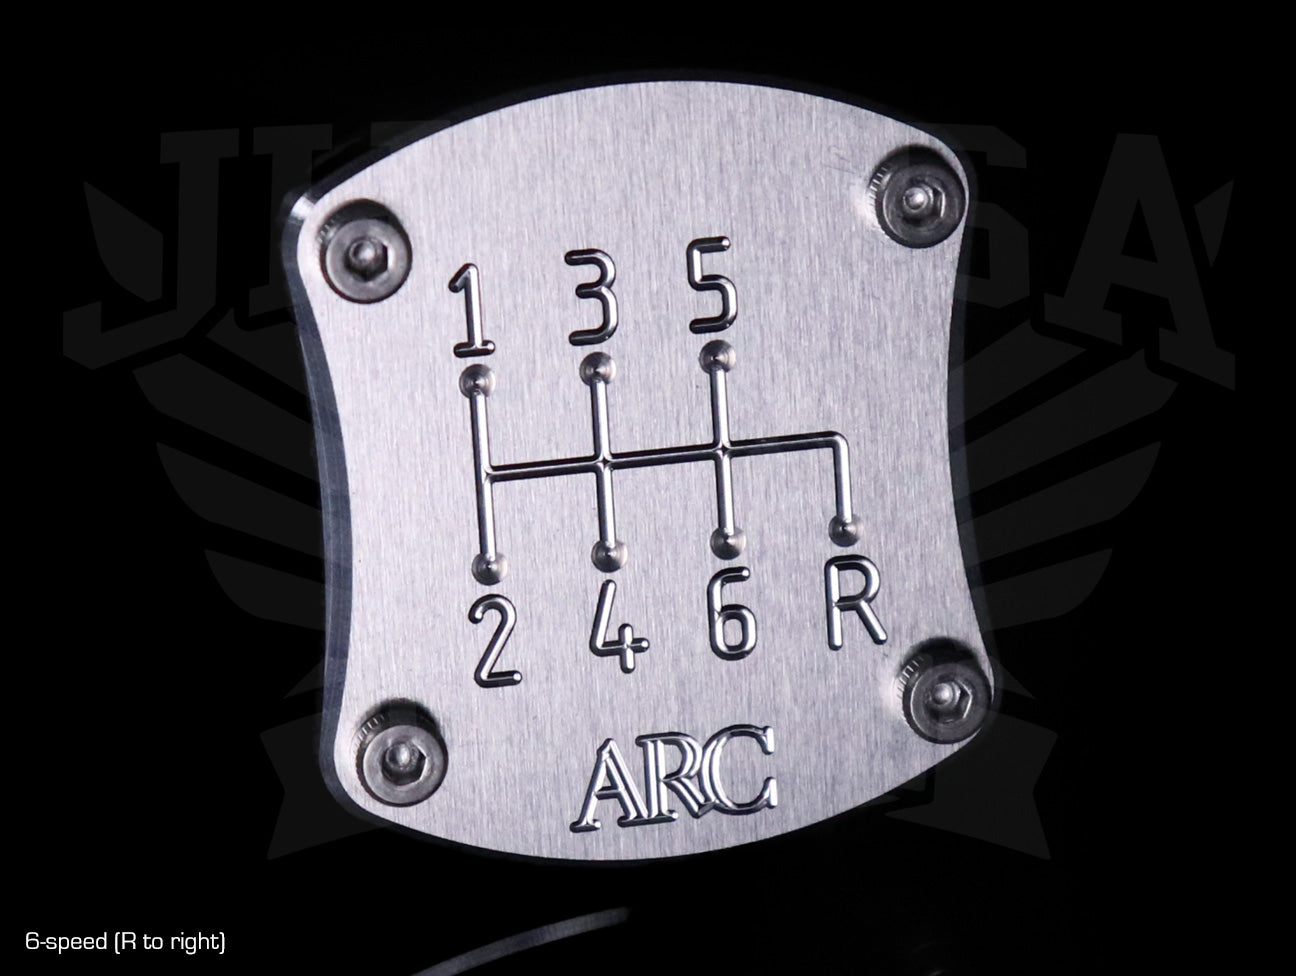 ARC Shift Pattern Plate